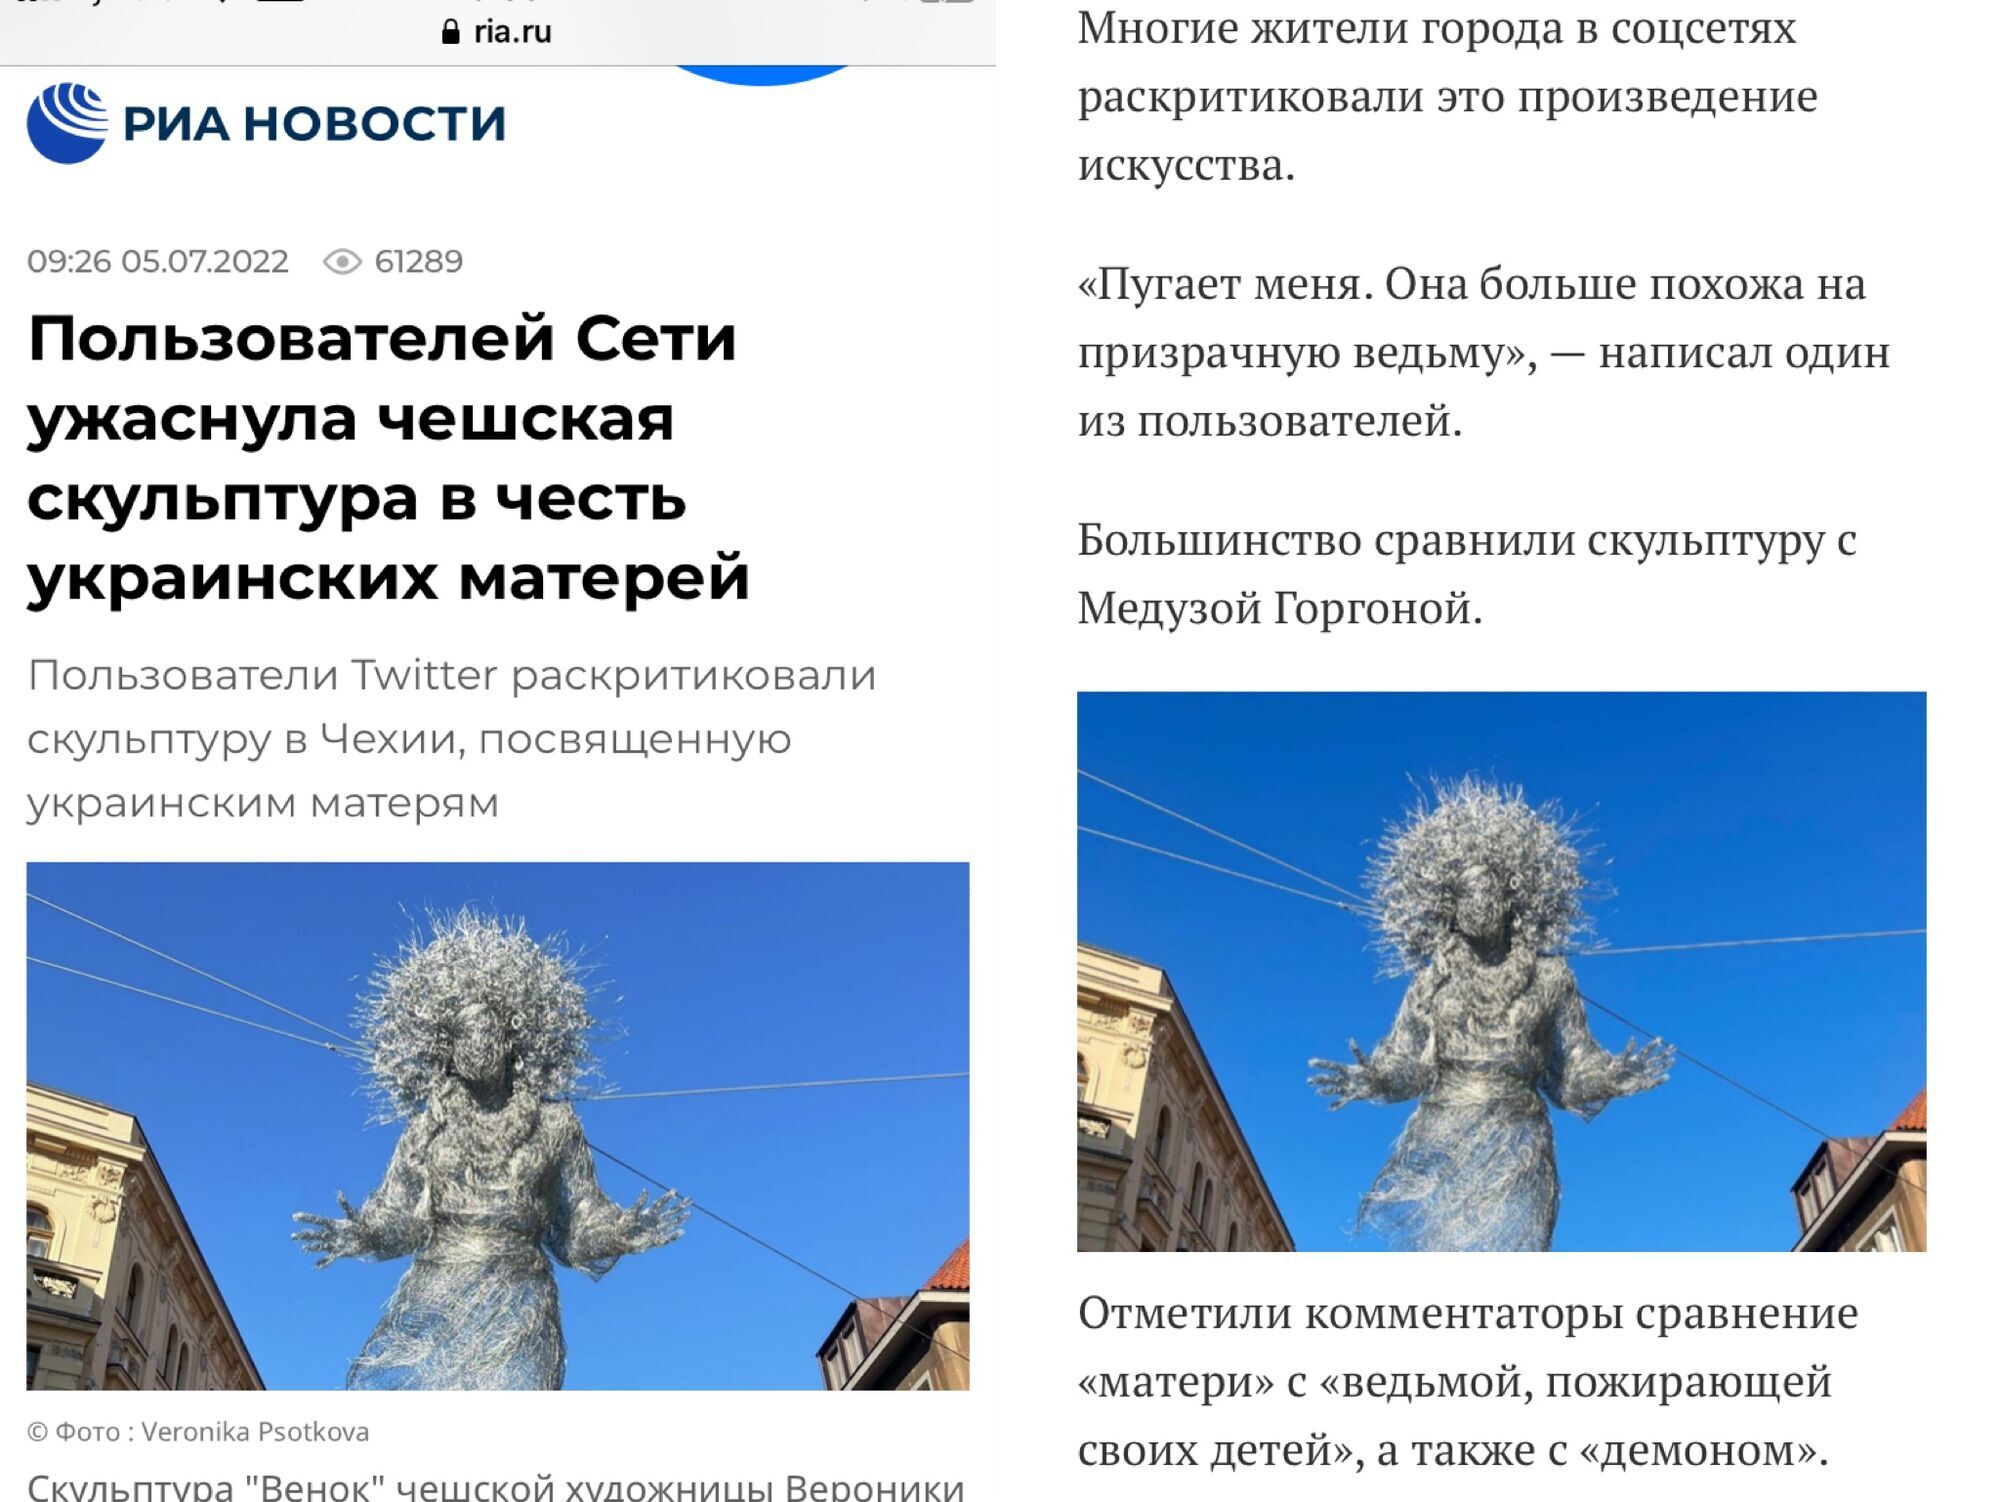 В Праге появилась магическая скульптура "Венок", посвященная украинским матерям: россияне кипят от злости